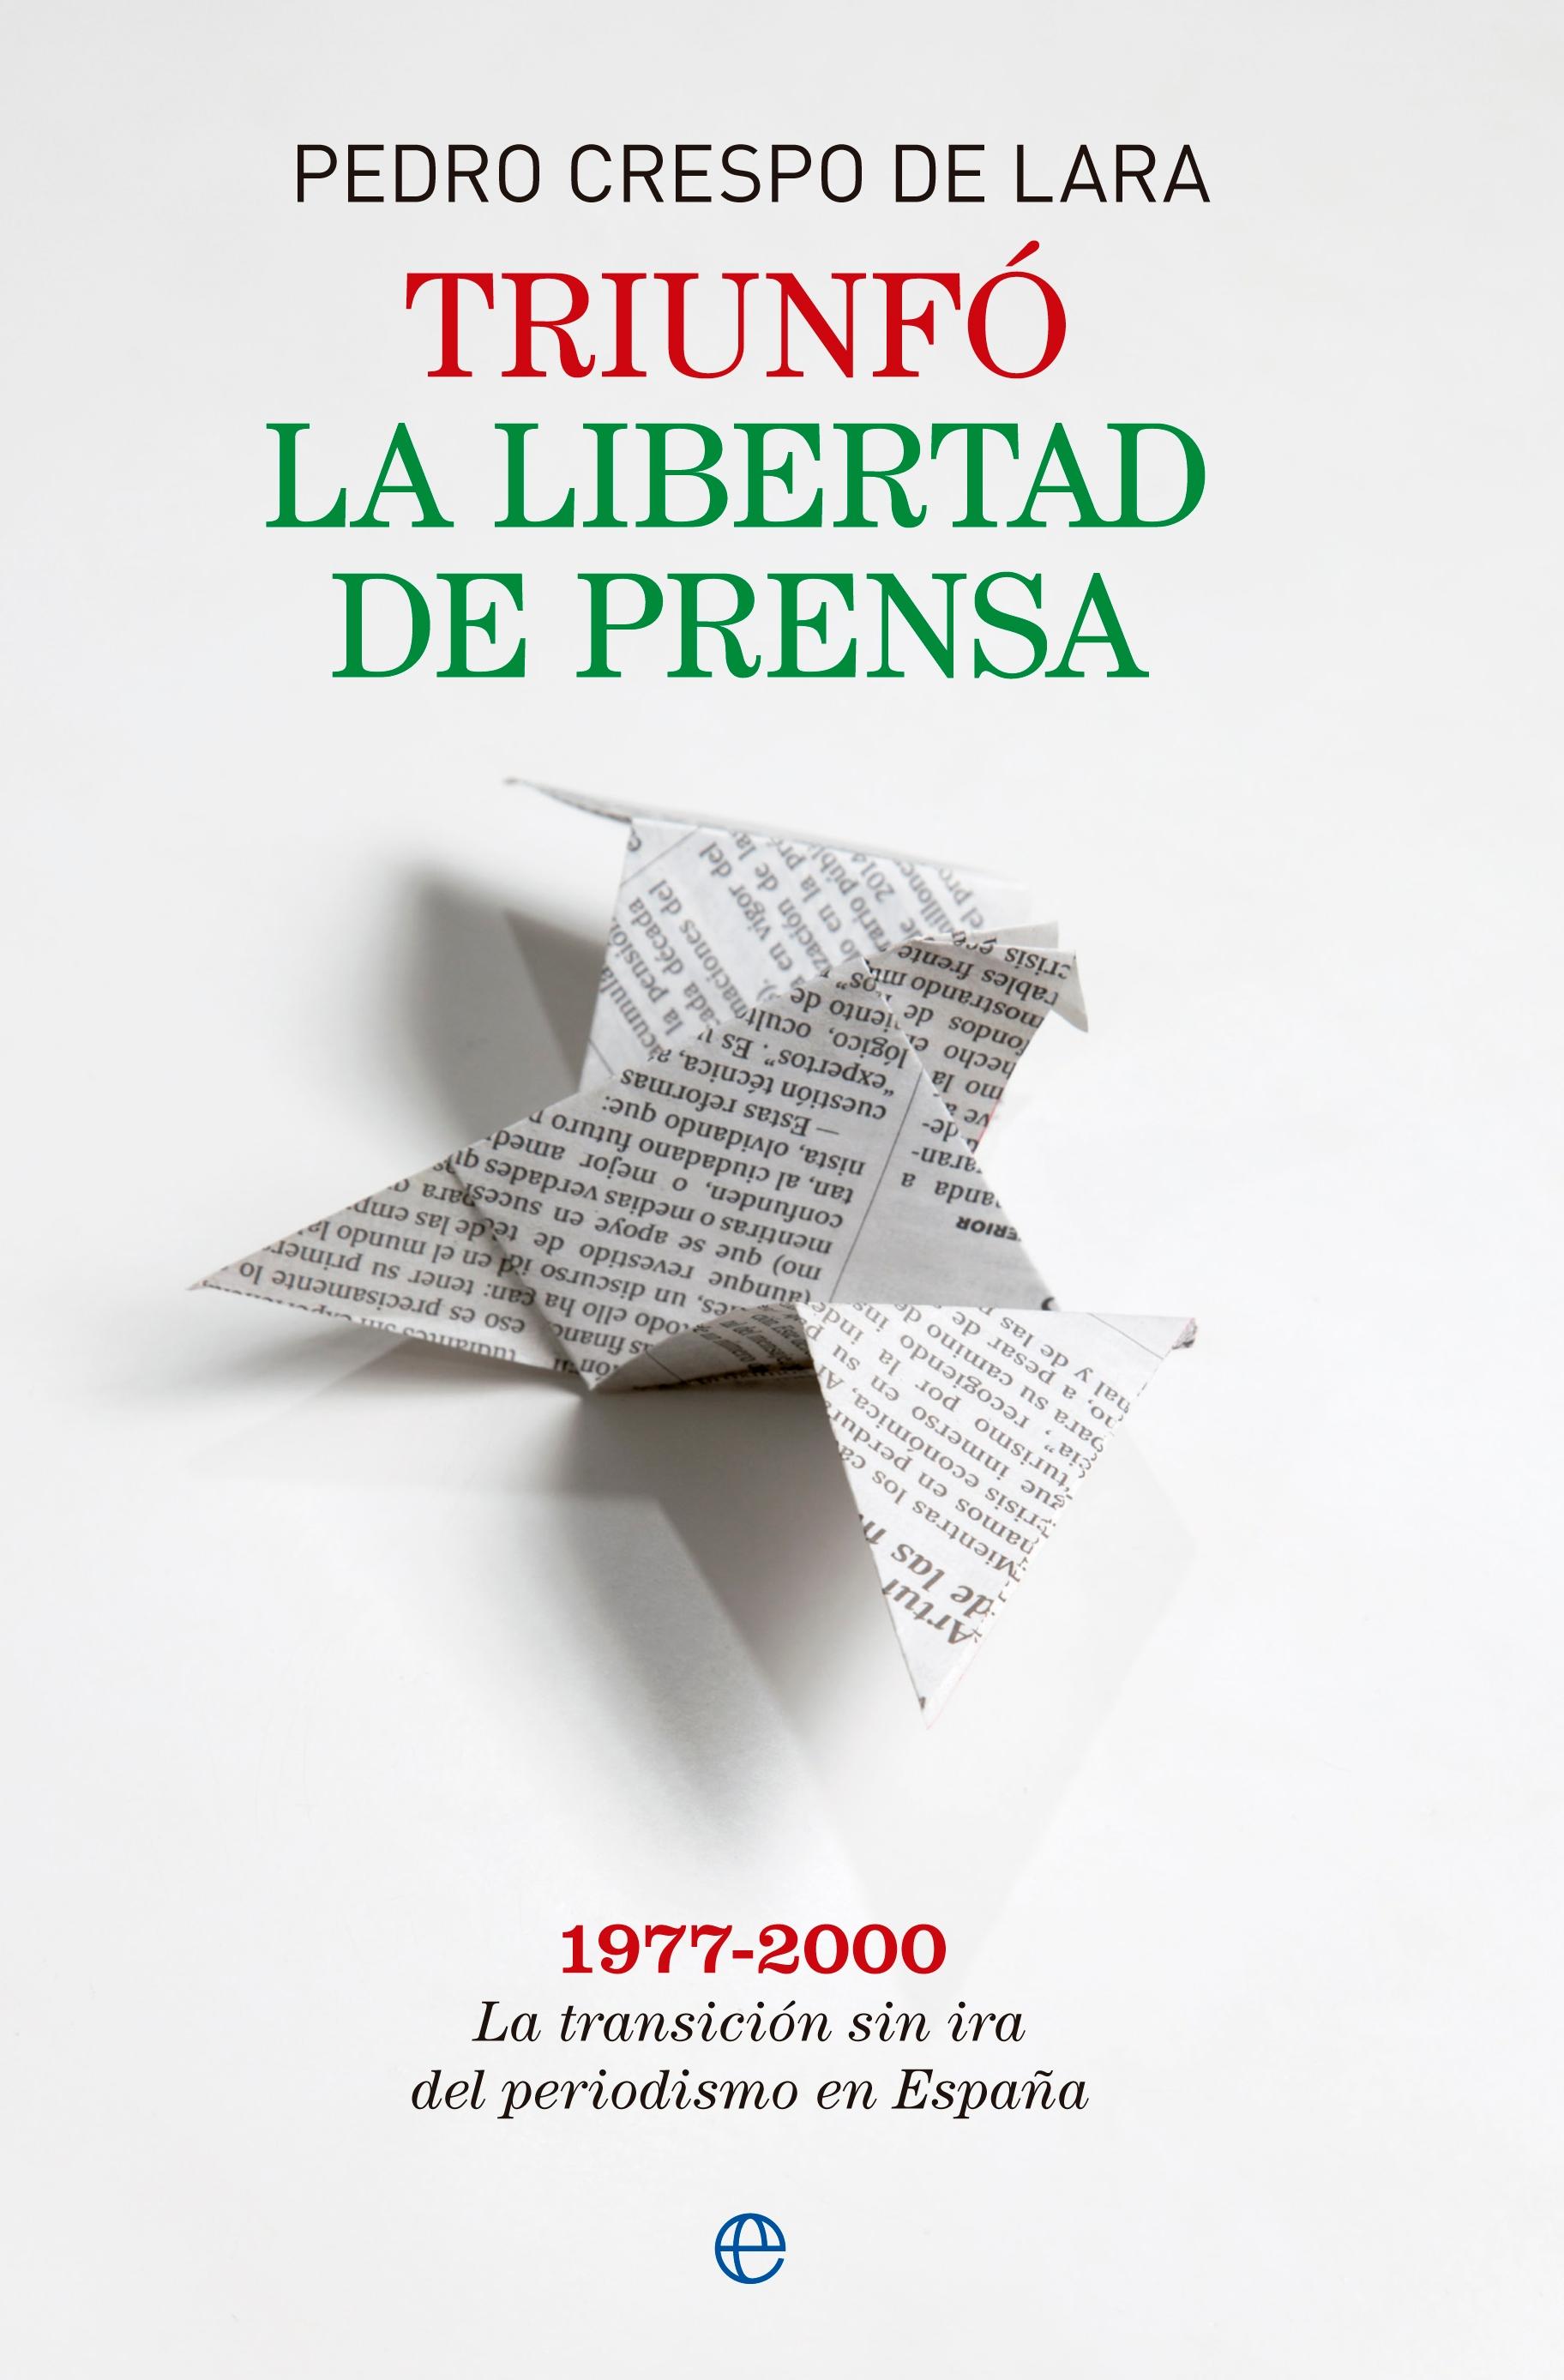 Triunfó la libertad de prensa "La transición sin ira del periodismo de España 1977 - 2000". 